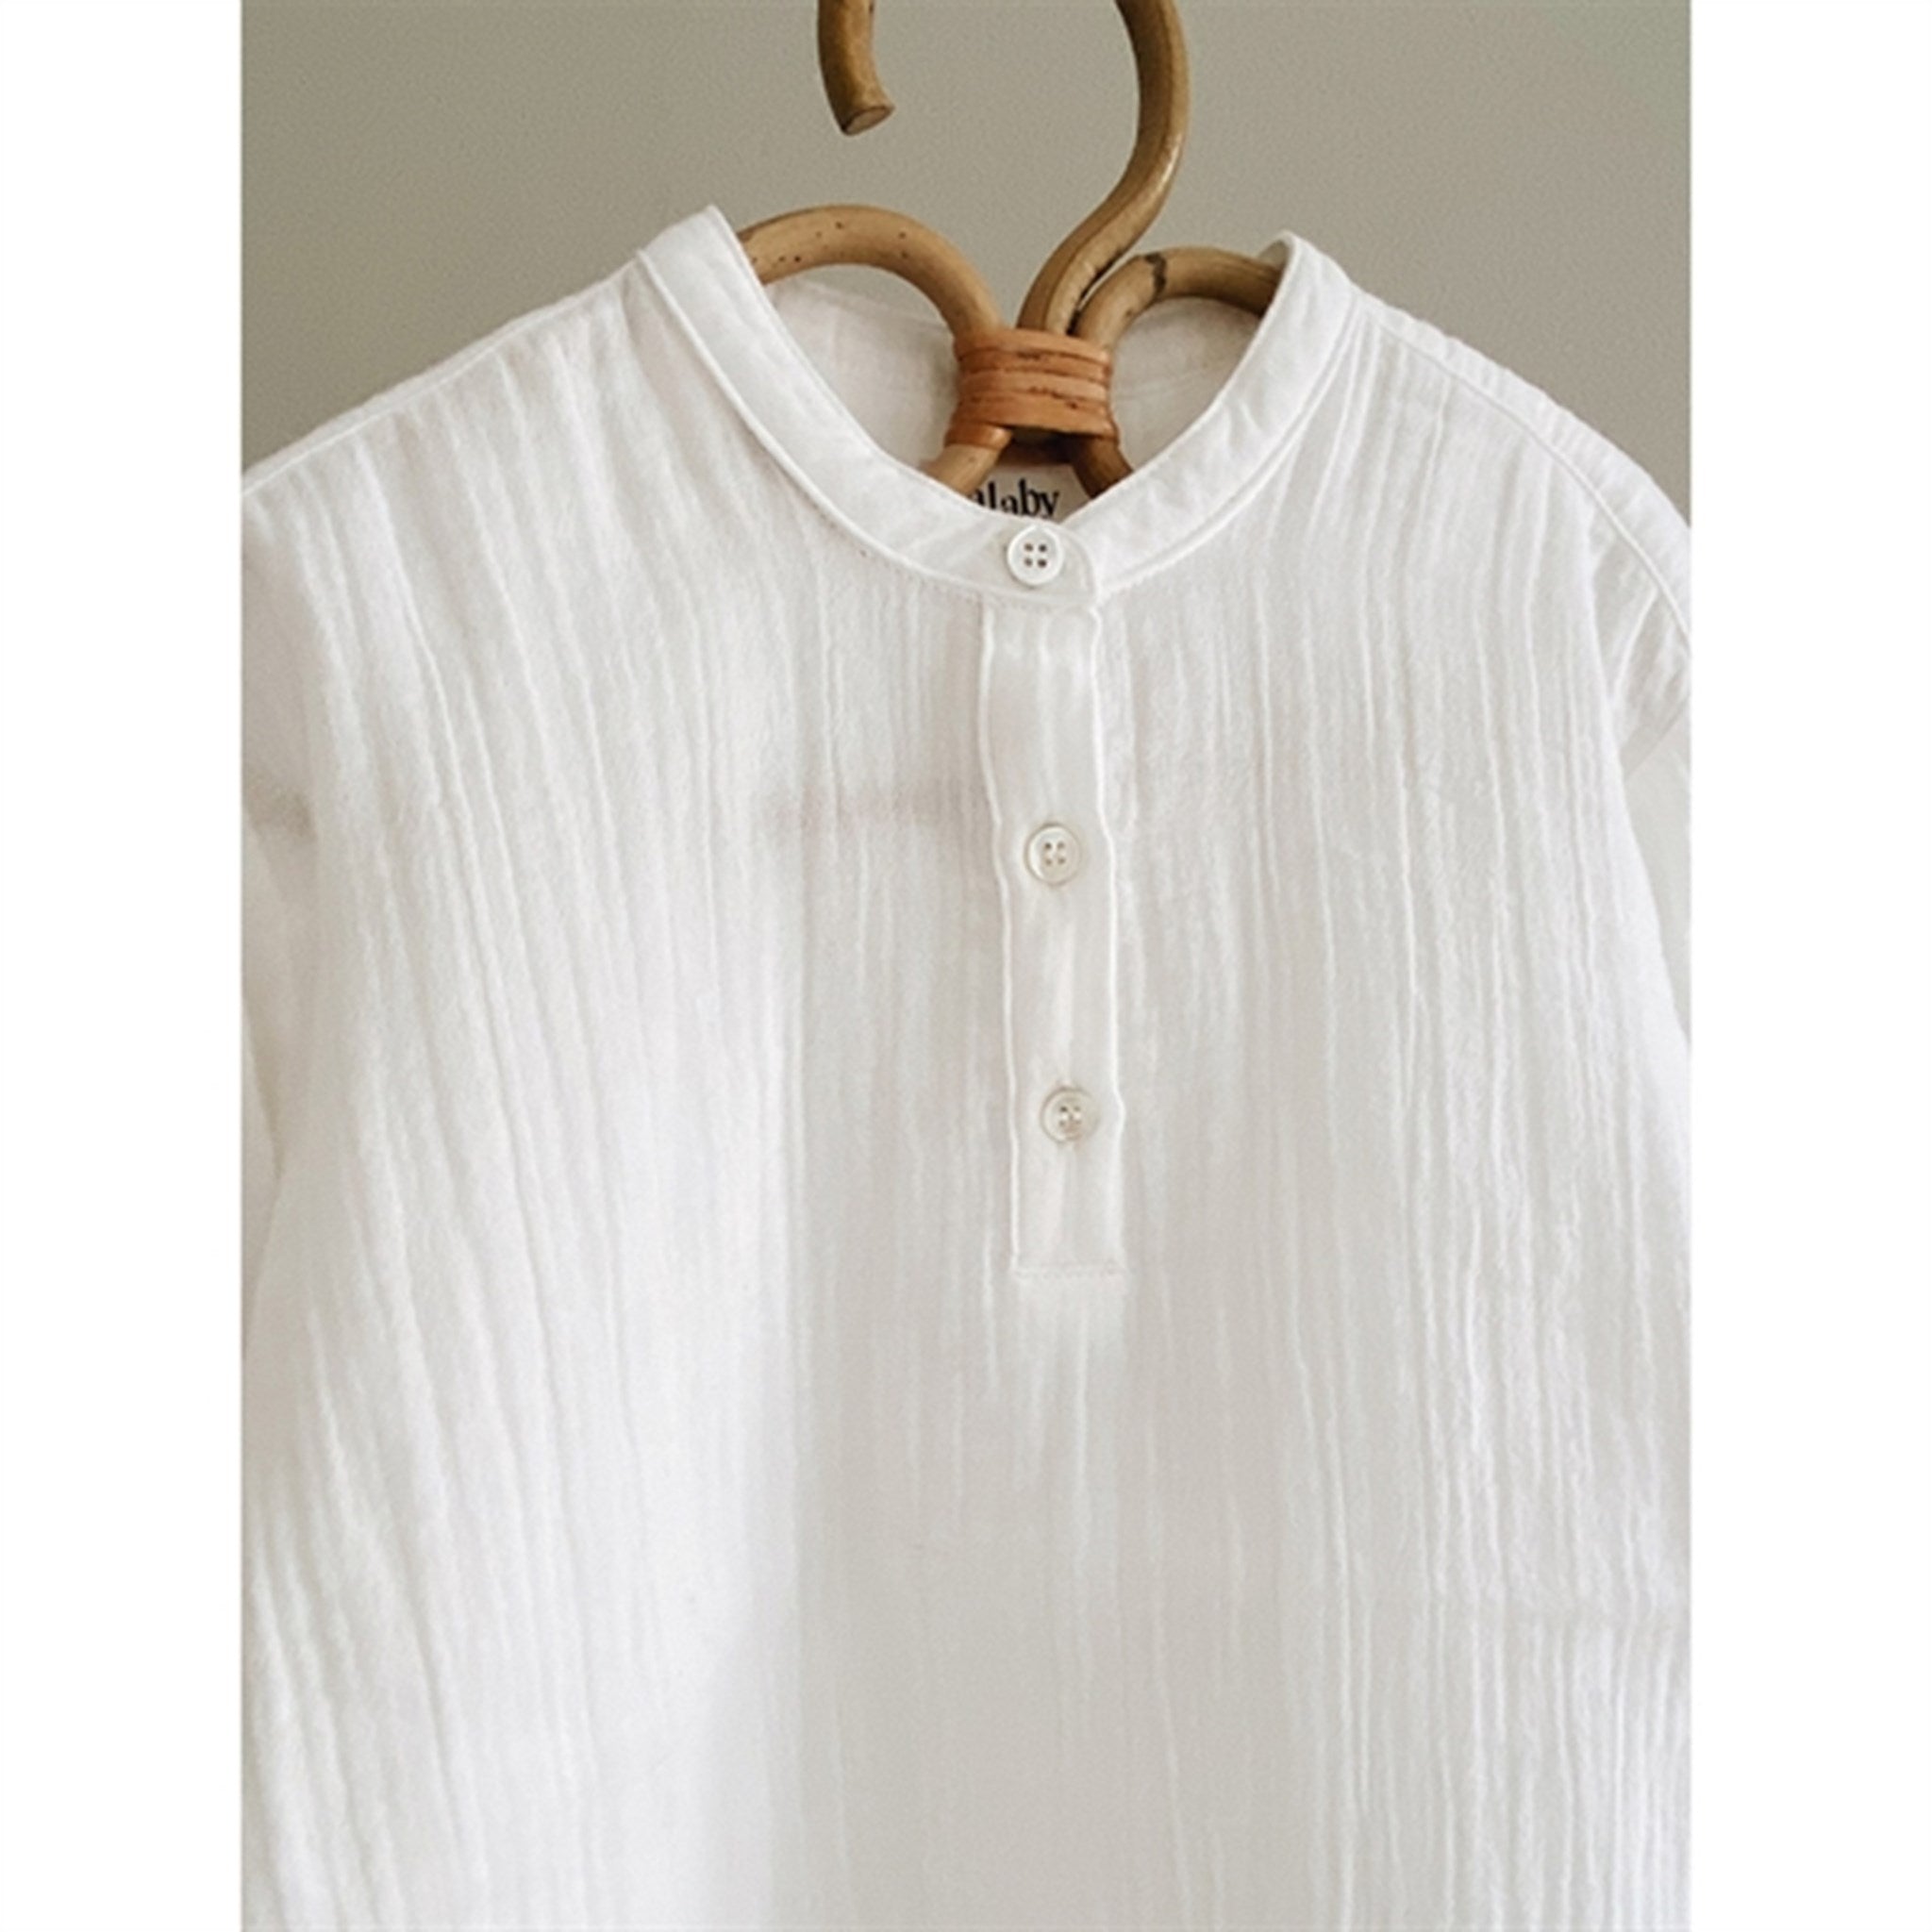 lalaby Natural white Carlo Shirt 4